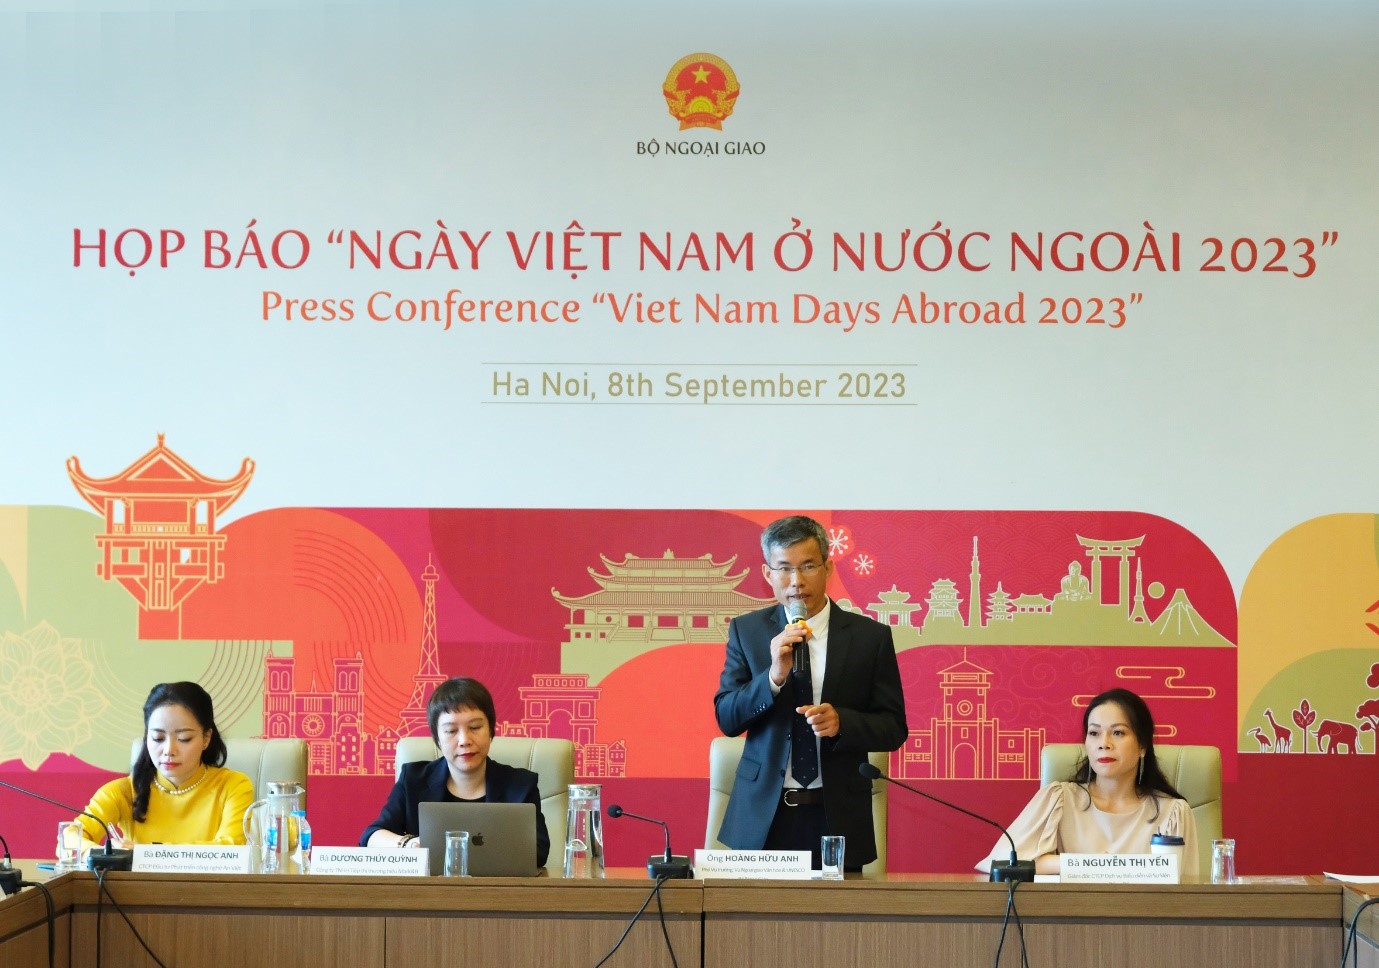 Ông Hoàng Hữu Anh - Phó Vụ trưởng Vụ Ngoại giao Văn hóa - UNESCO (Bộ Ngoại giao) phát biểu khai mạc họp báo “Ngày Việt Nam ở nước ngoài 2023”